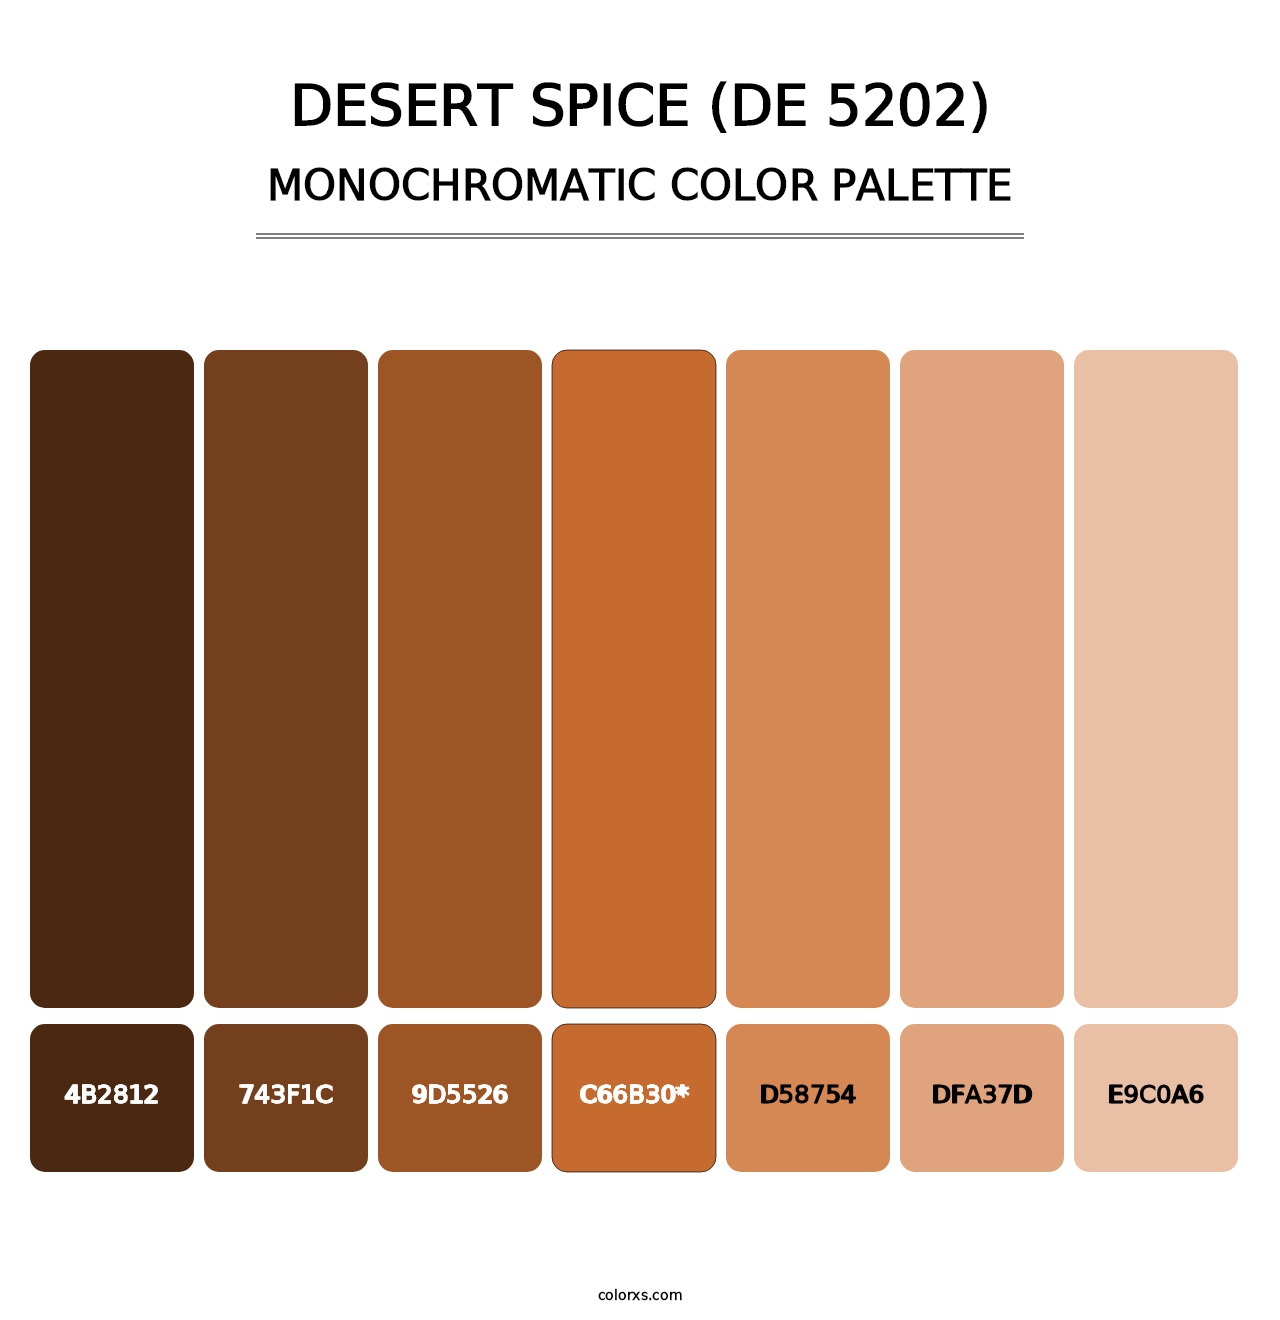 Desert Spice (DE 5202) - Monochromatic Color Palette